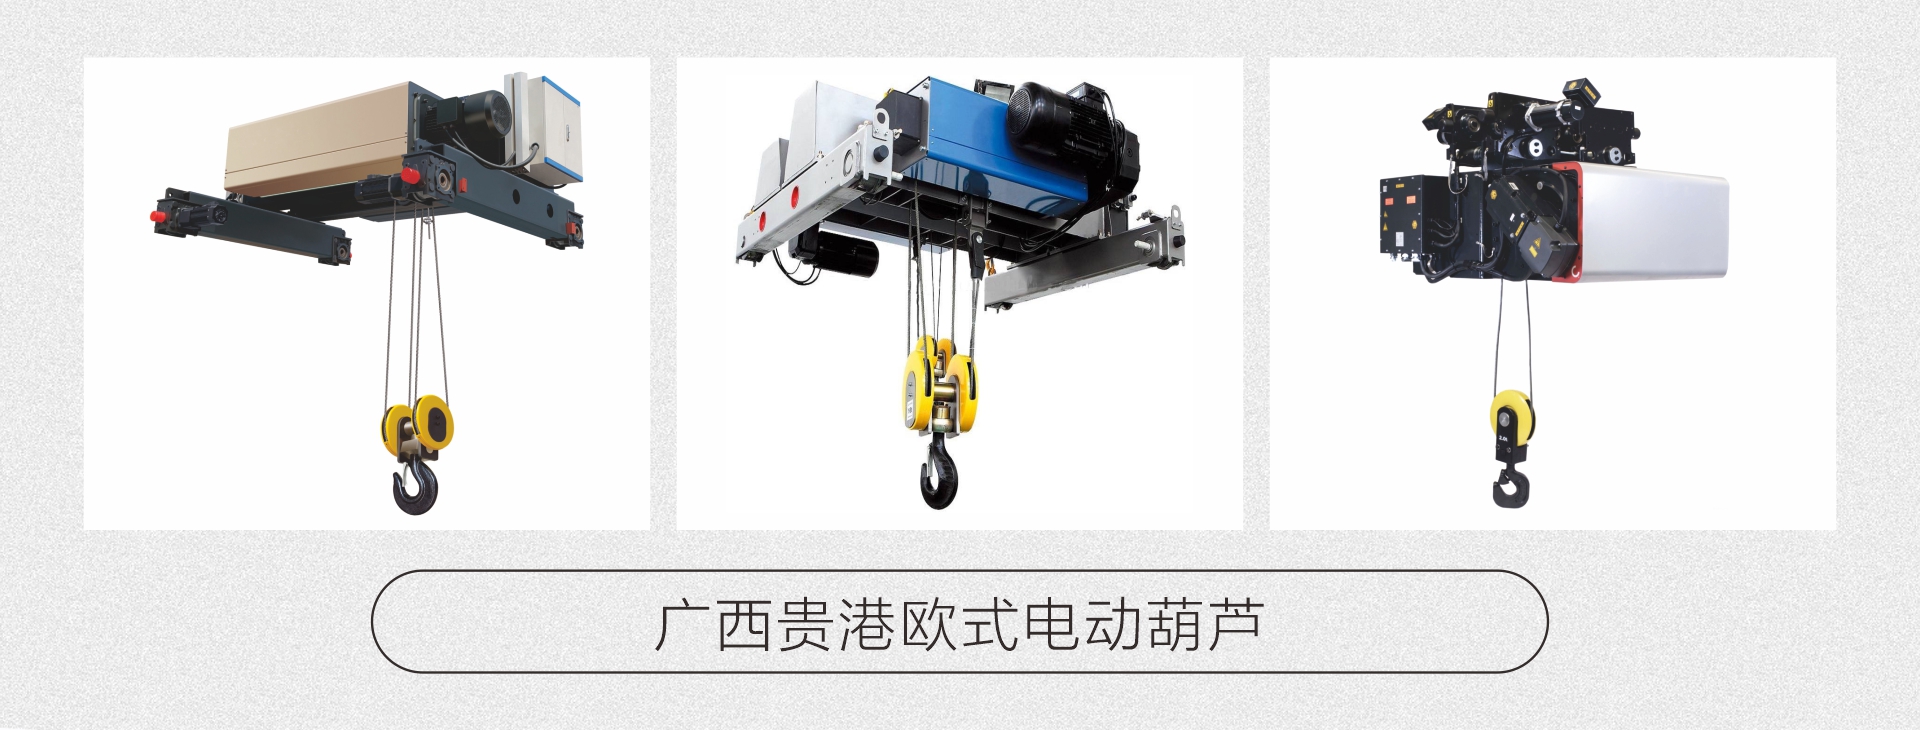 广西贵港专业起重机-广西起重机械